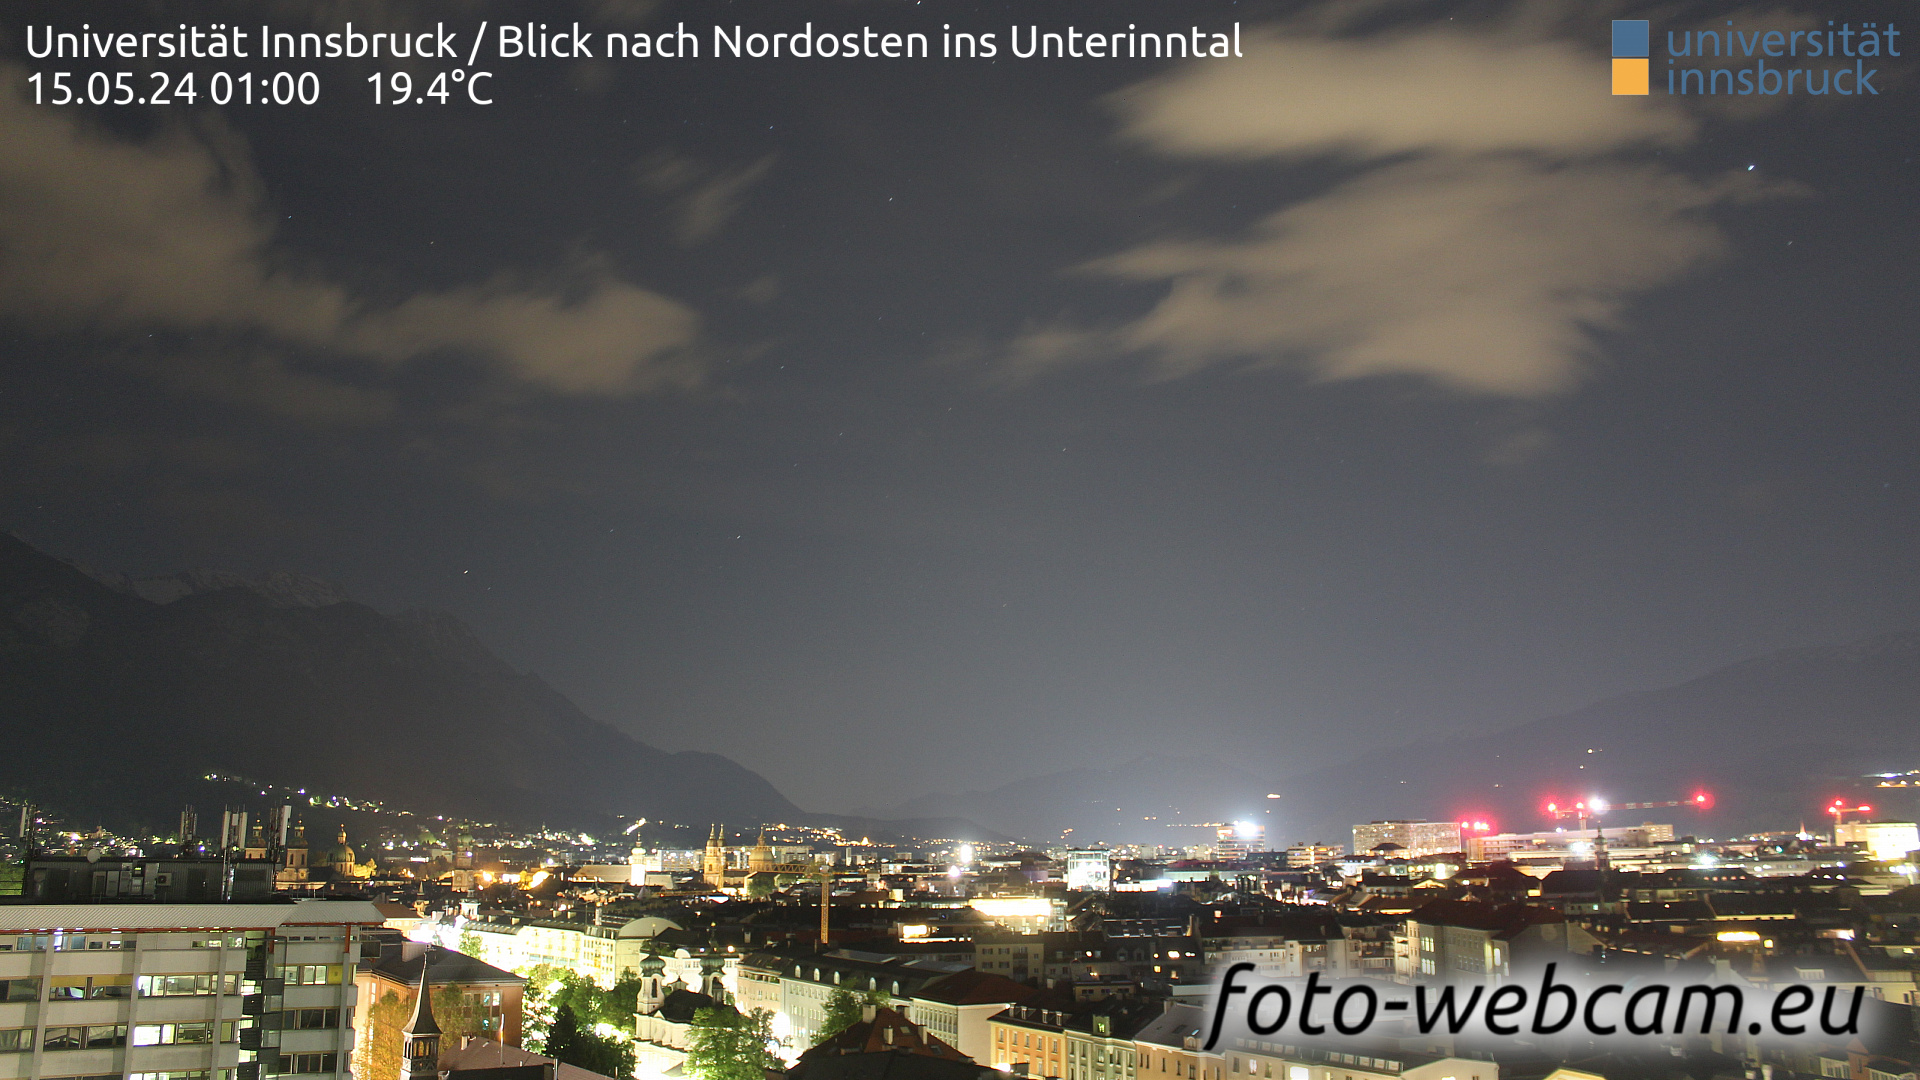 Innsbruck Thu. 01:06